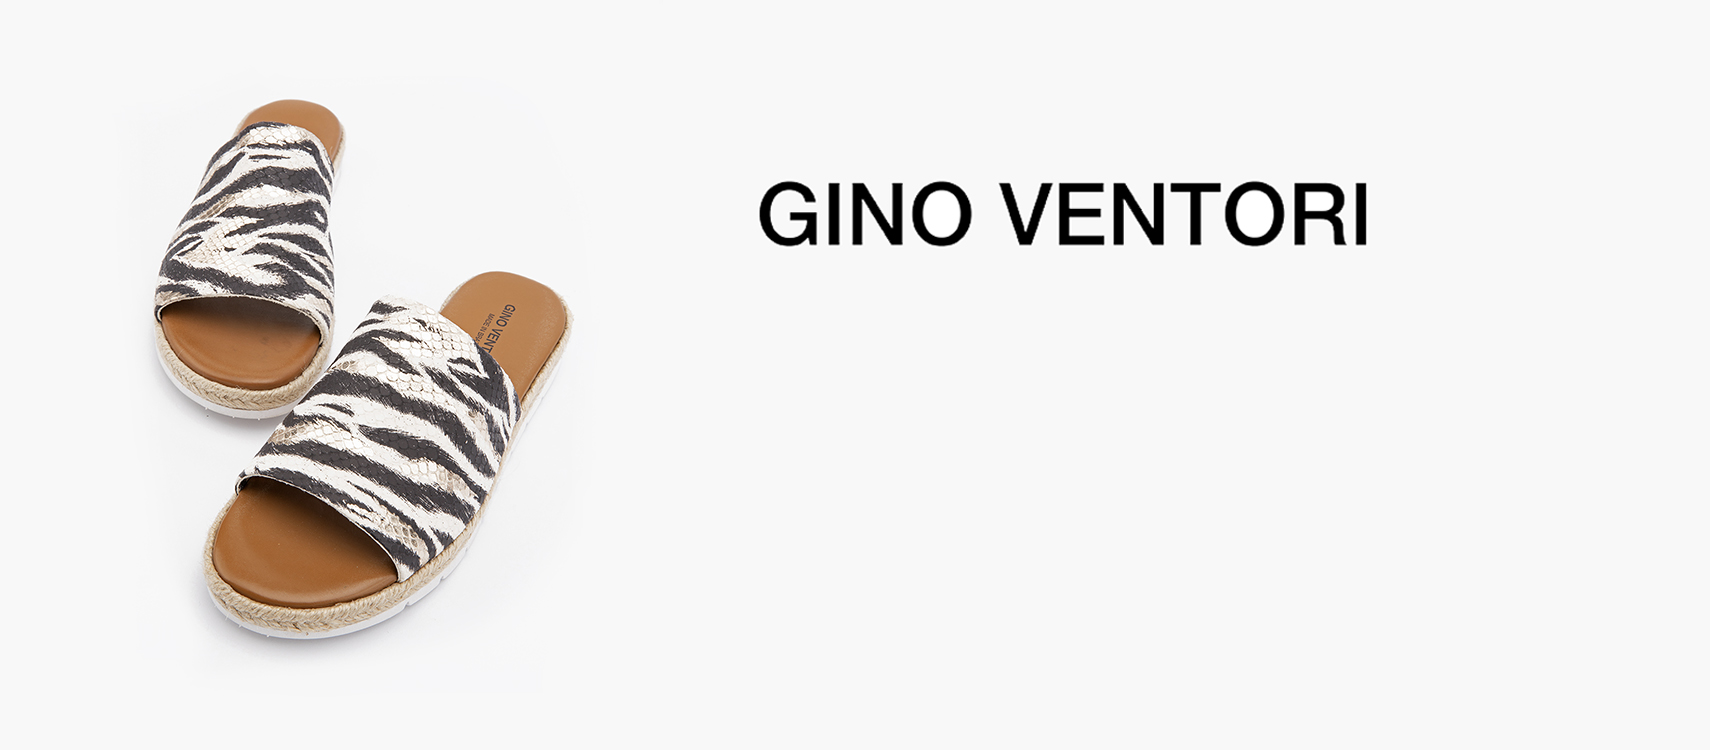 Gino Ventori Shoes